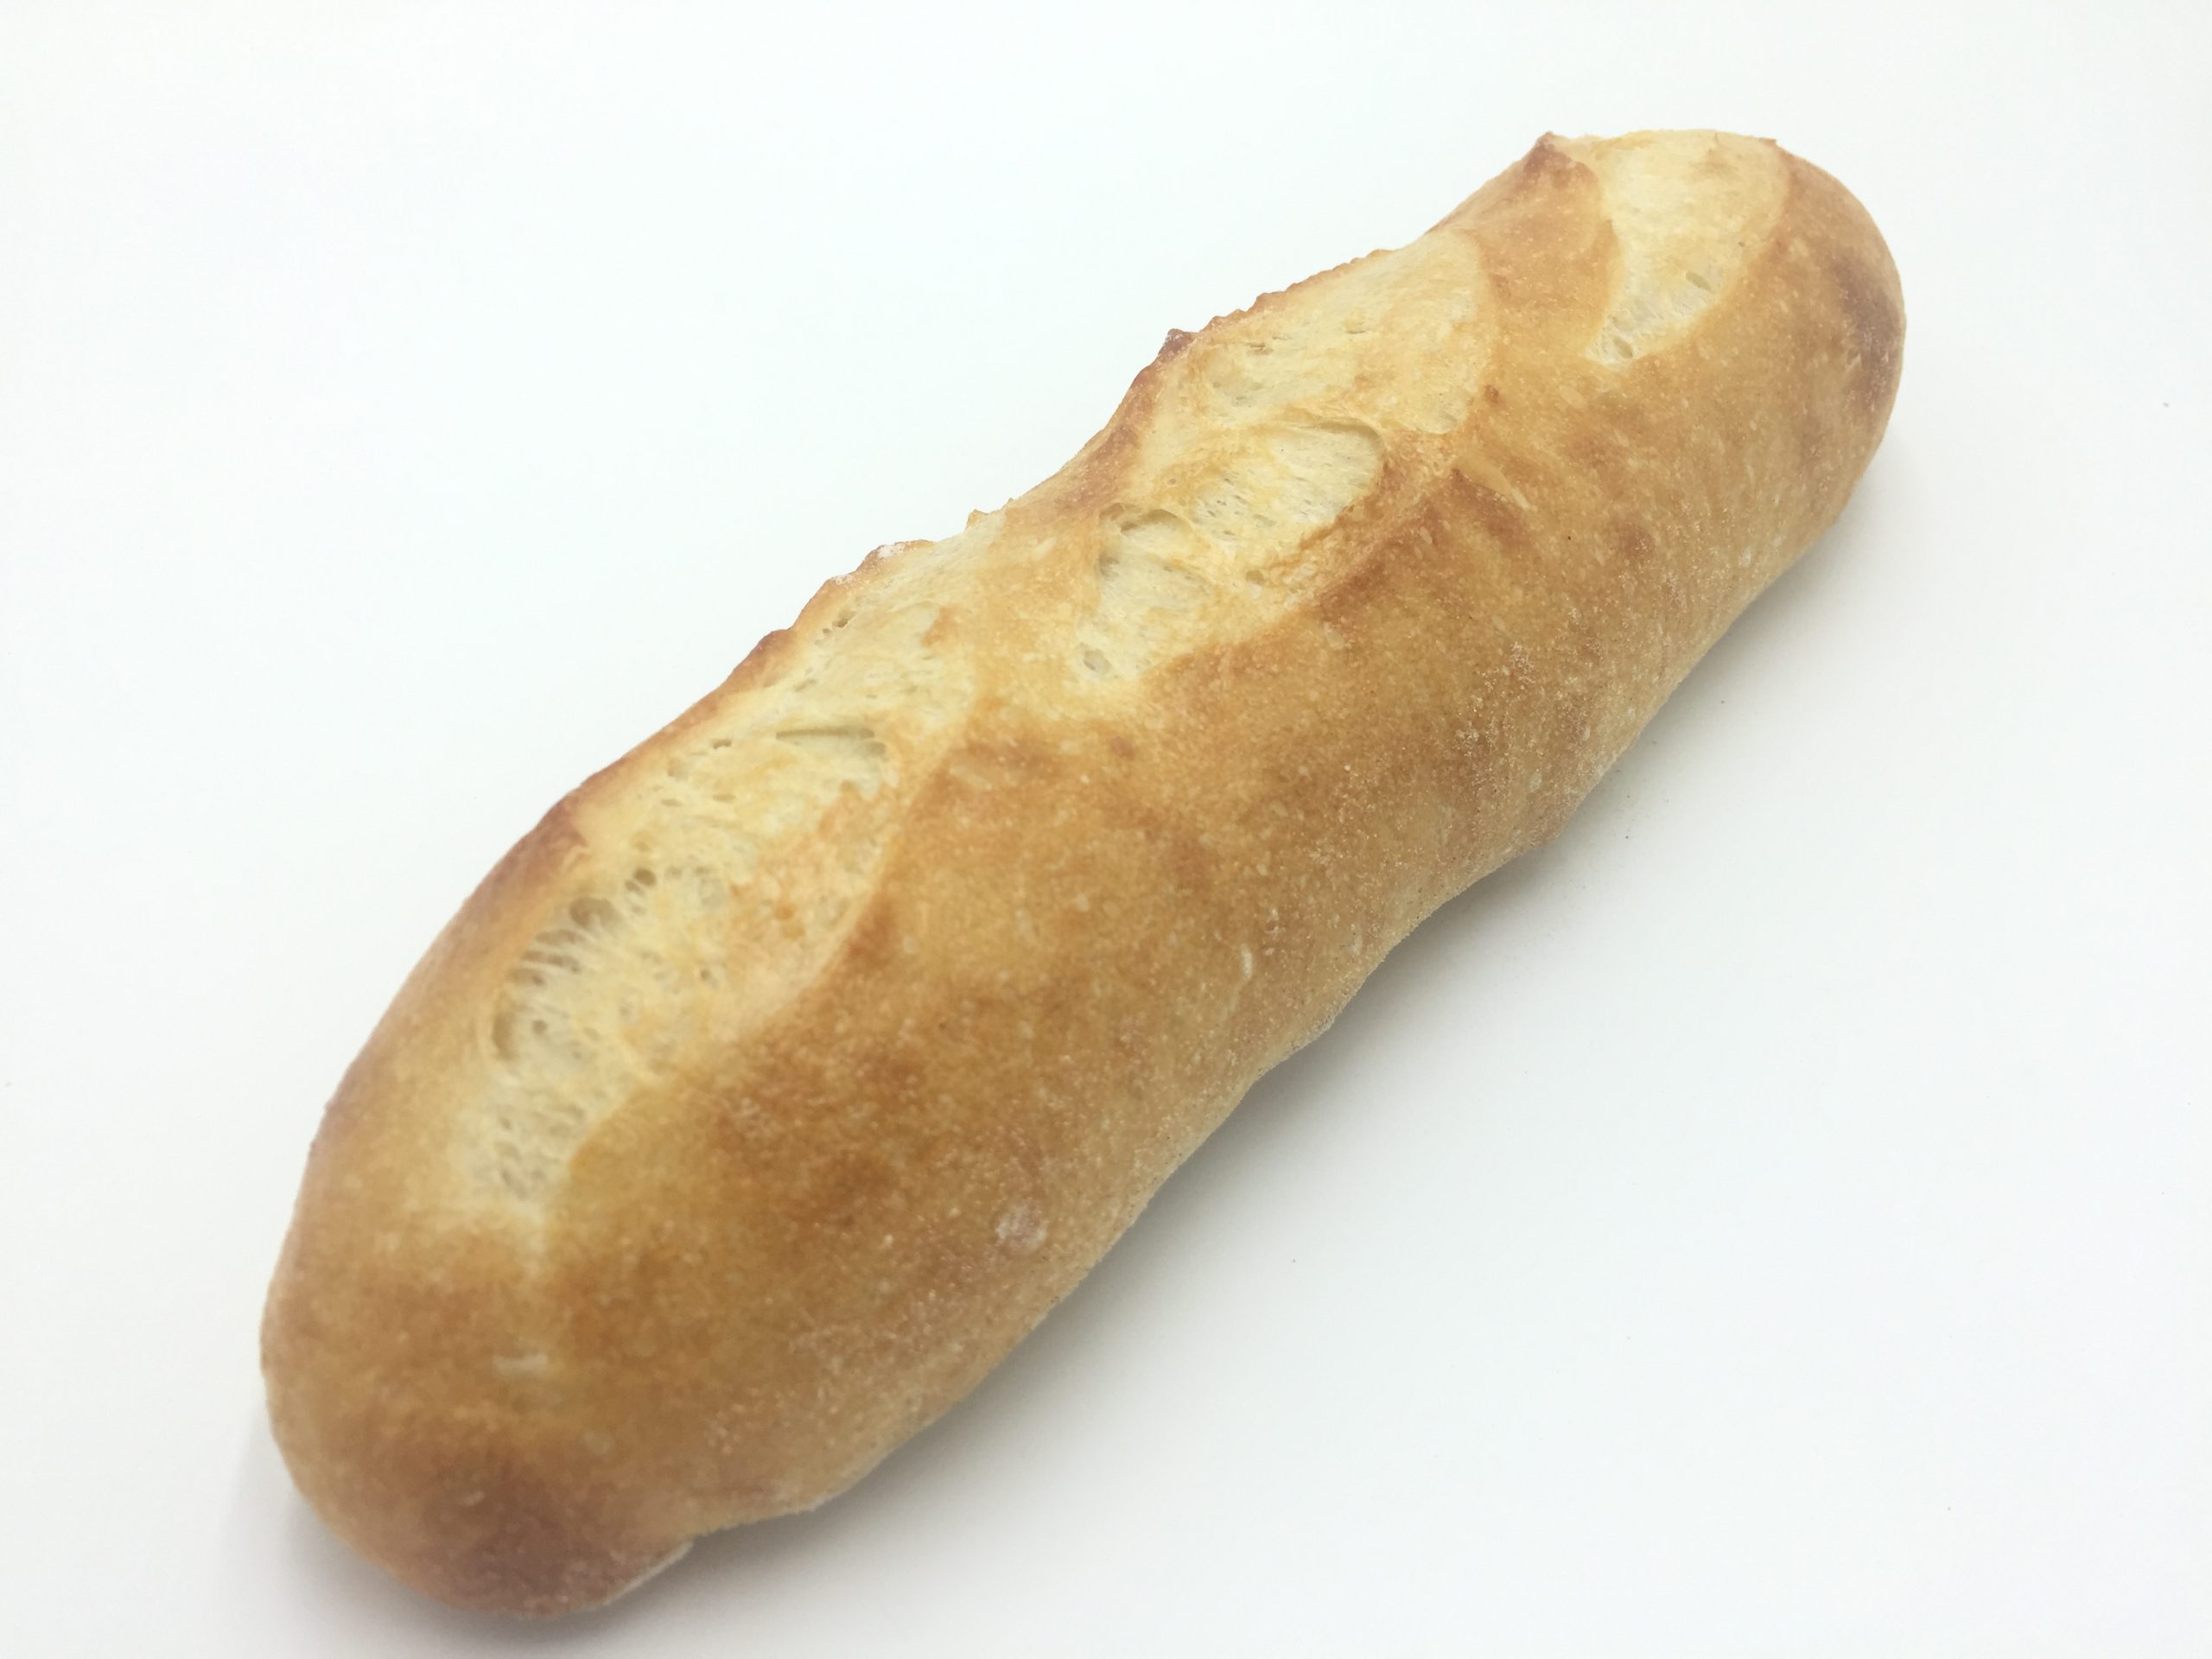 bread formulation